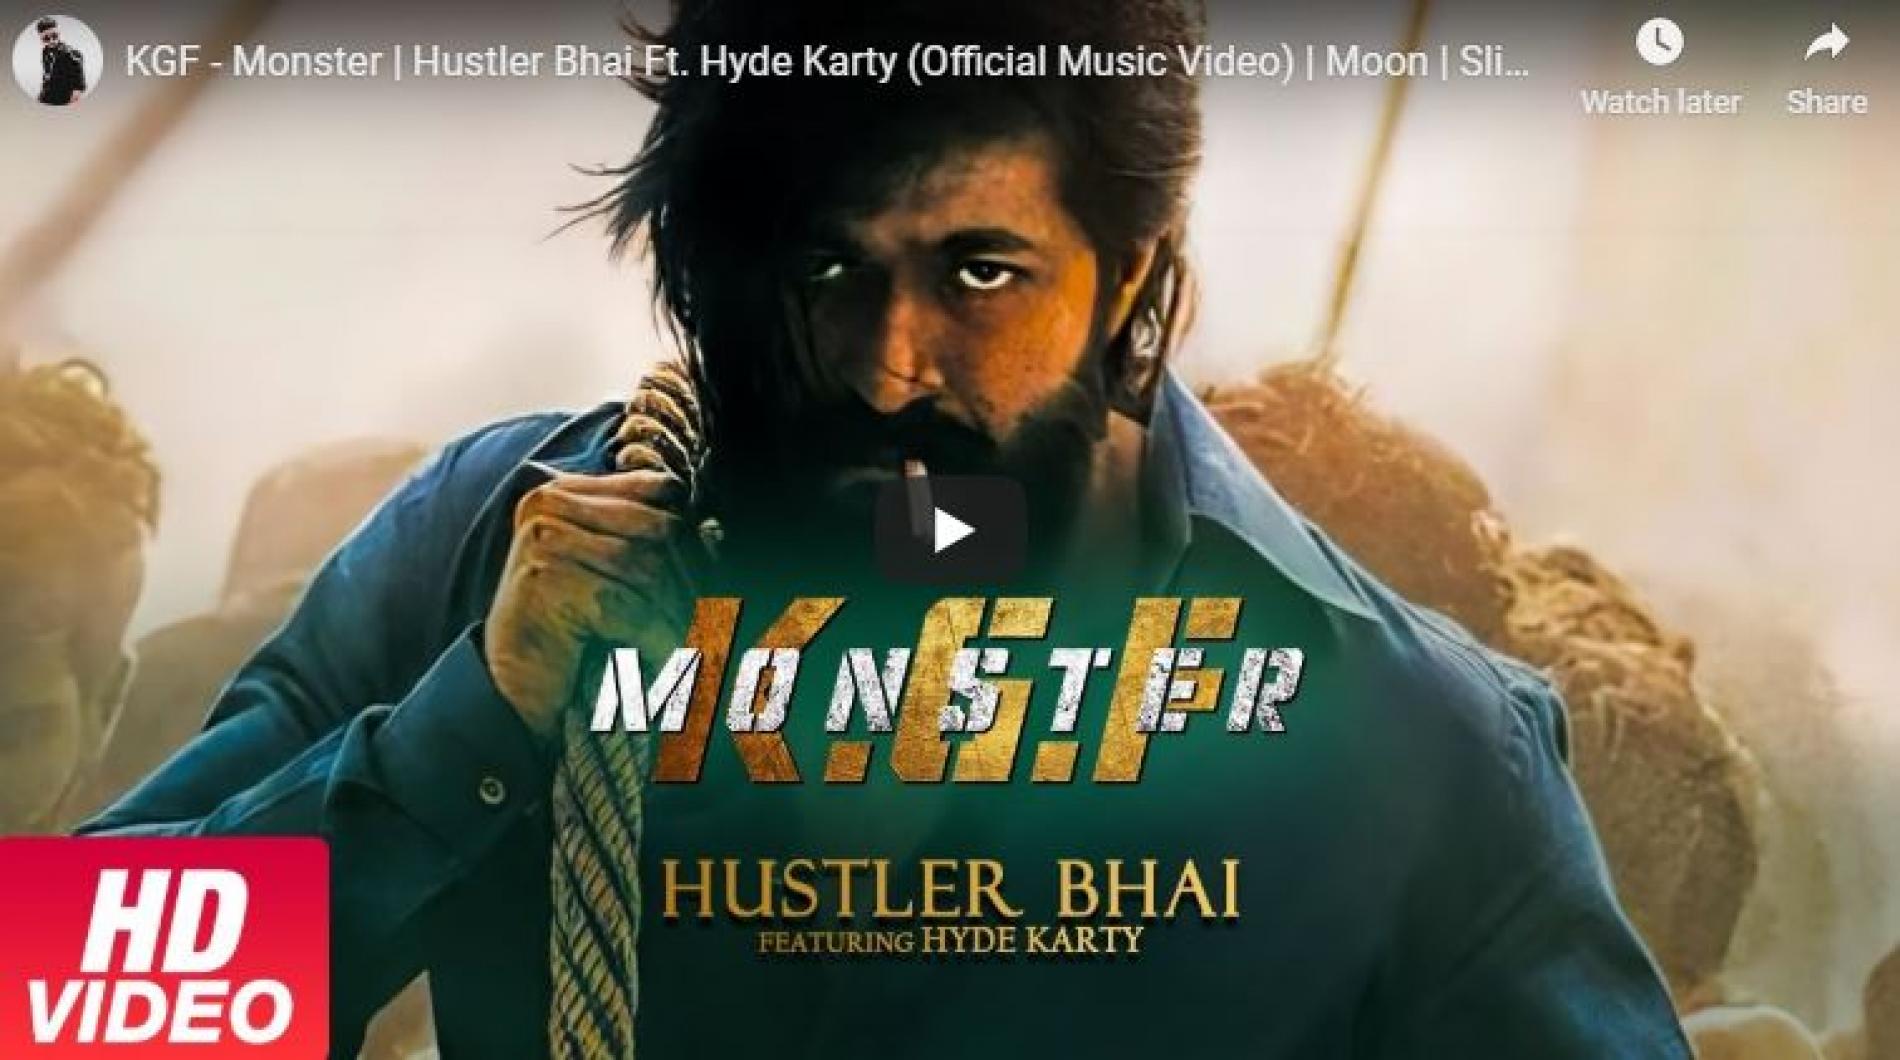 KGF – Monster | Hustler Bhai Ft. Hyde Karty (Official Music Video) | Moon | Slimkiller | كي.جي.اف